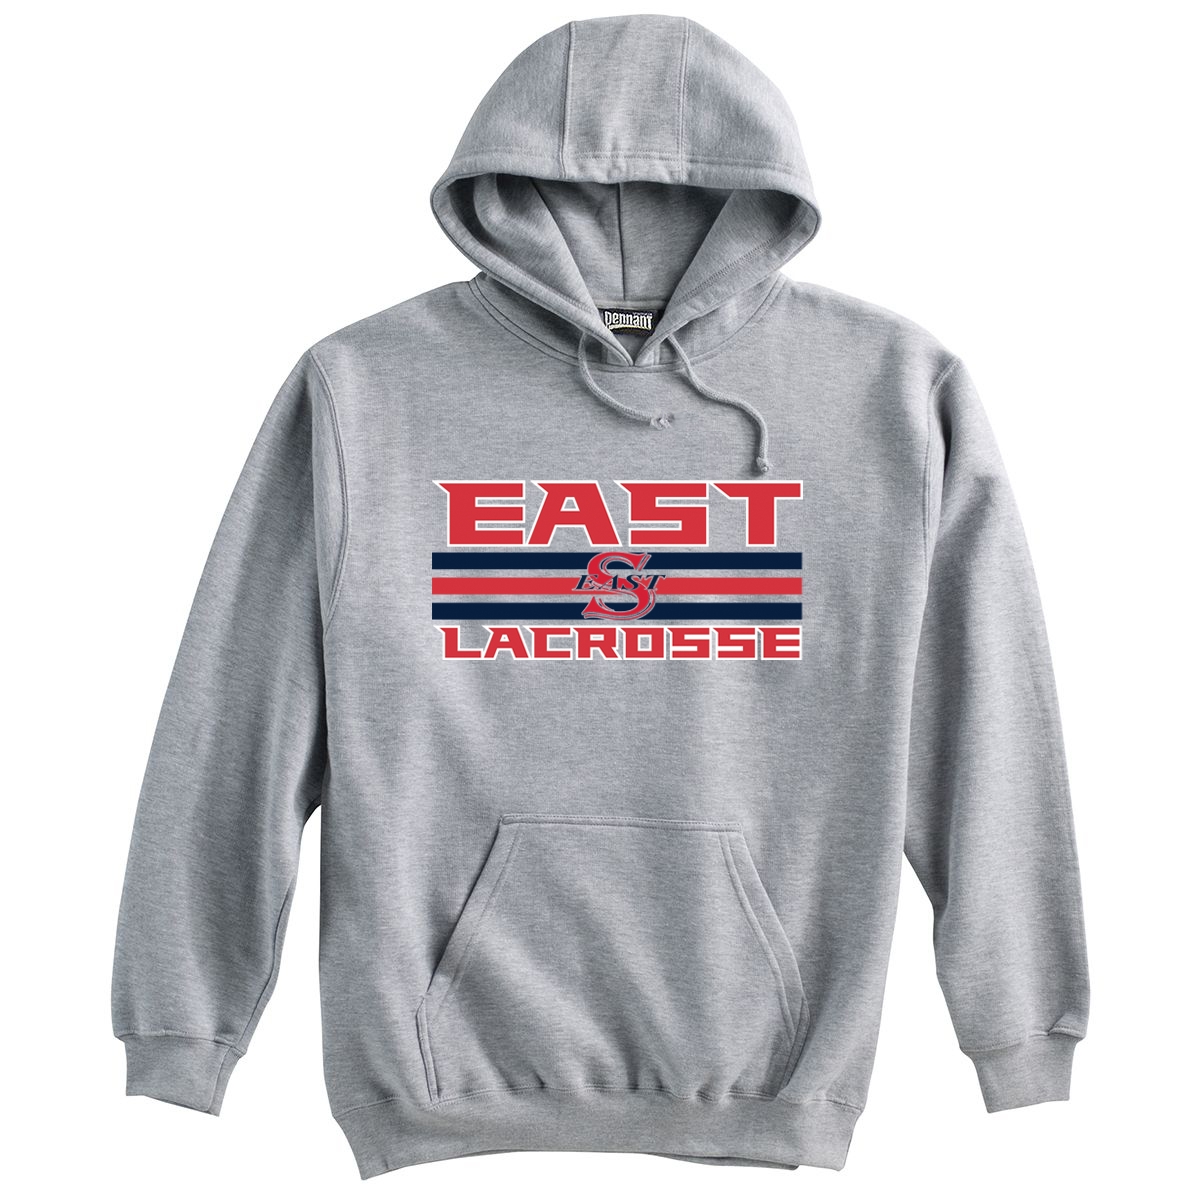 Smithtown East Girls Lacrosse Sweatshirt